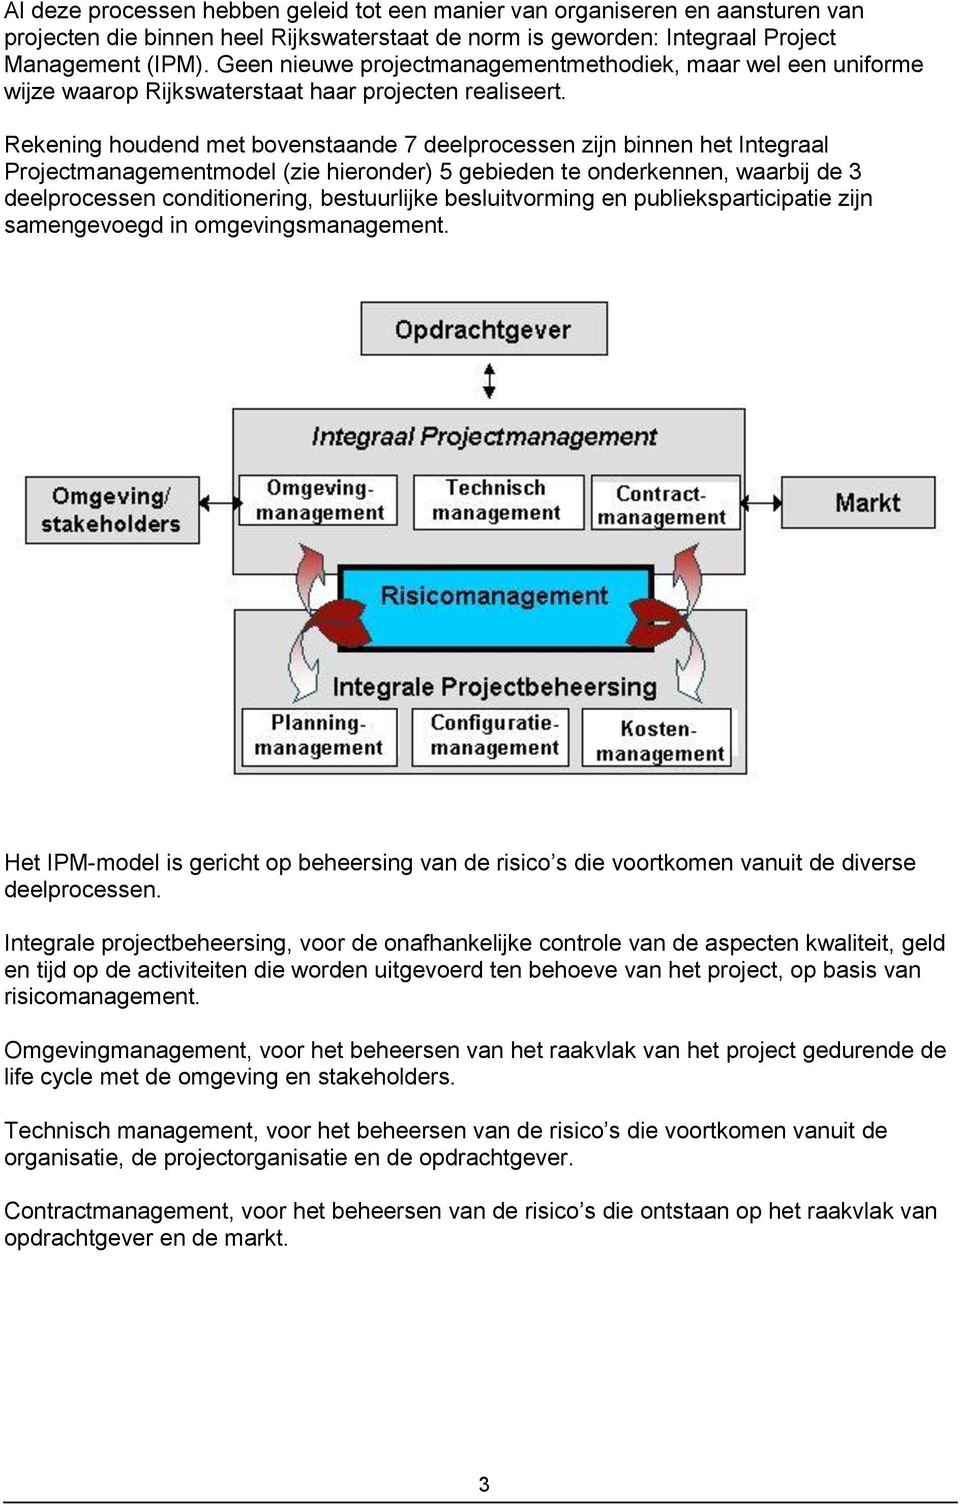 Rekening houdend met bovenstaande 7 deelprocessen zijn binnen het Integraal Projectmanagementmodel (zie hieronder) 5 gebieden te onderkennen, waarbij de 3 deelprocessen conditionering, bestuurlijke